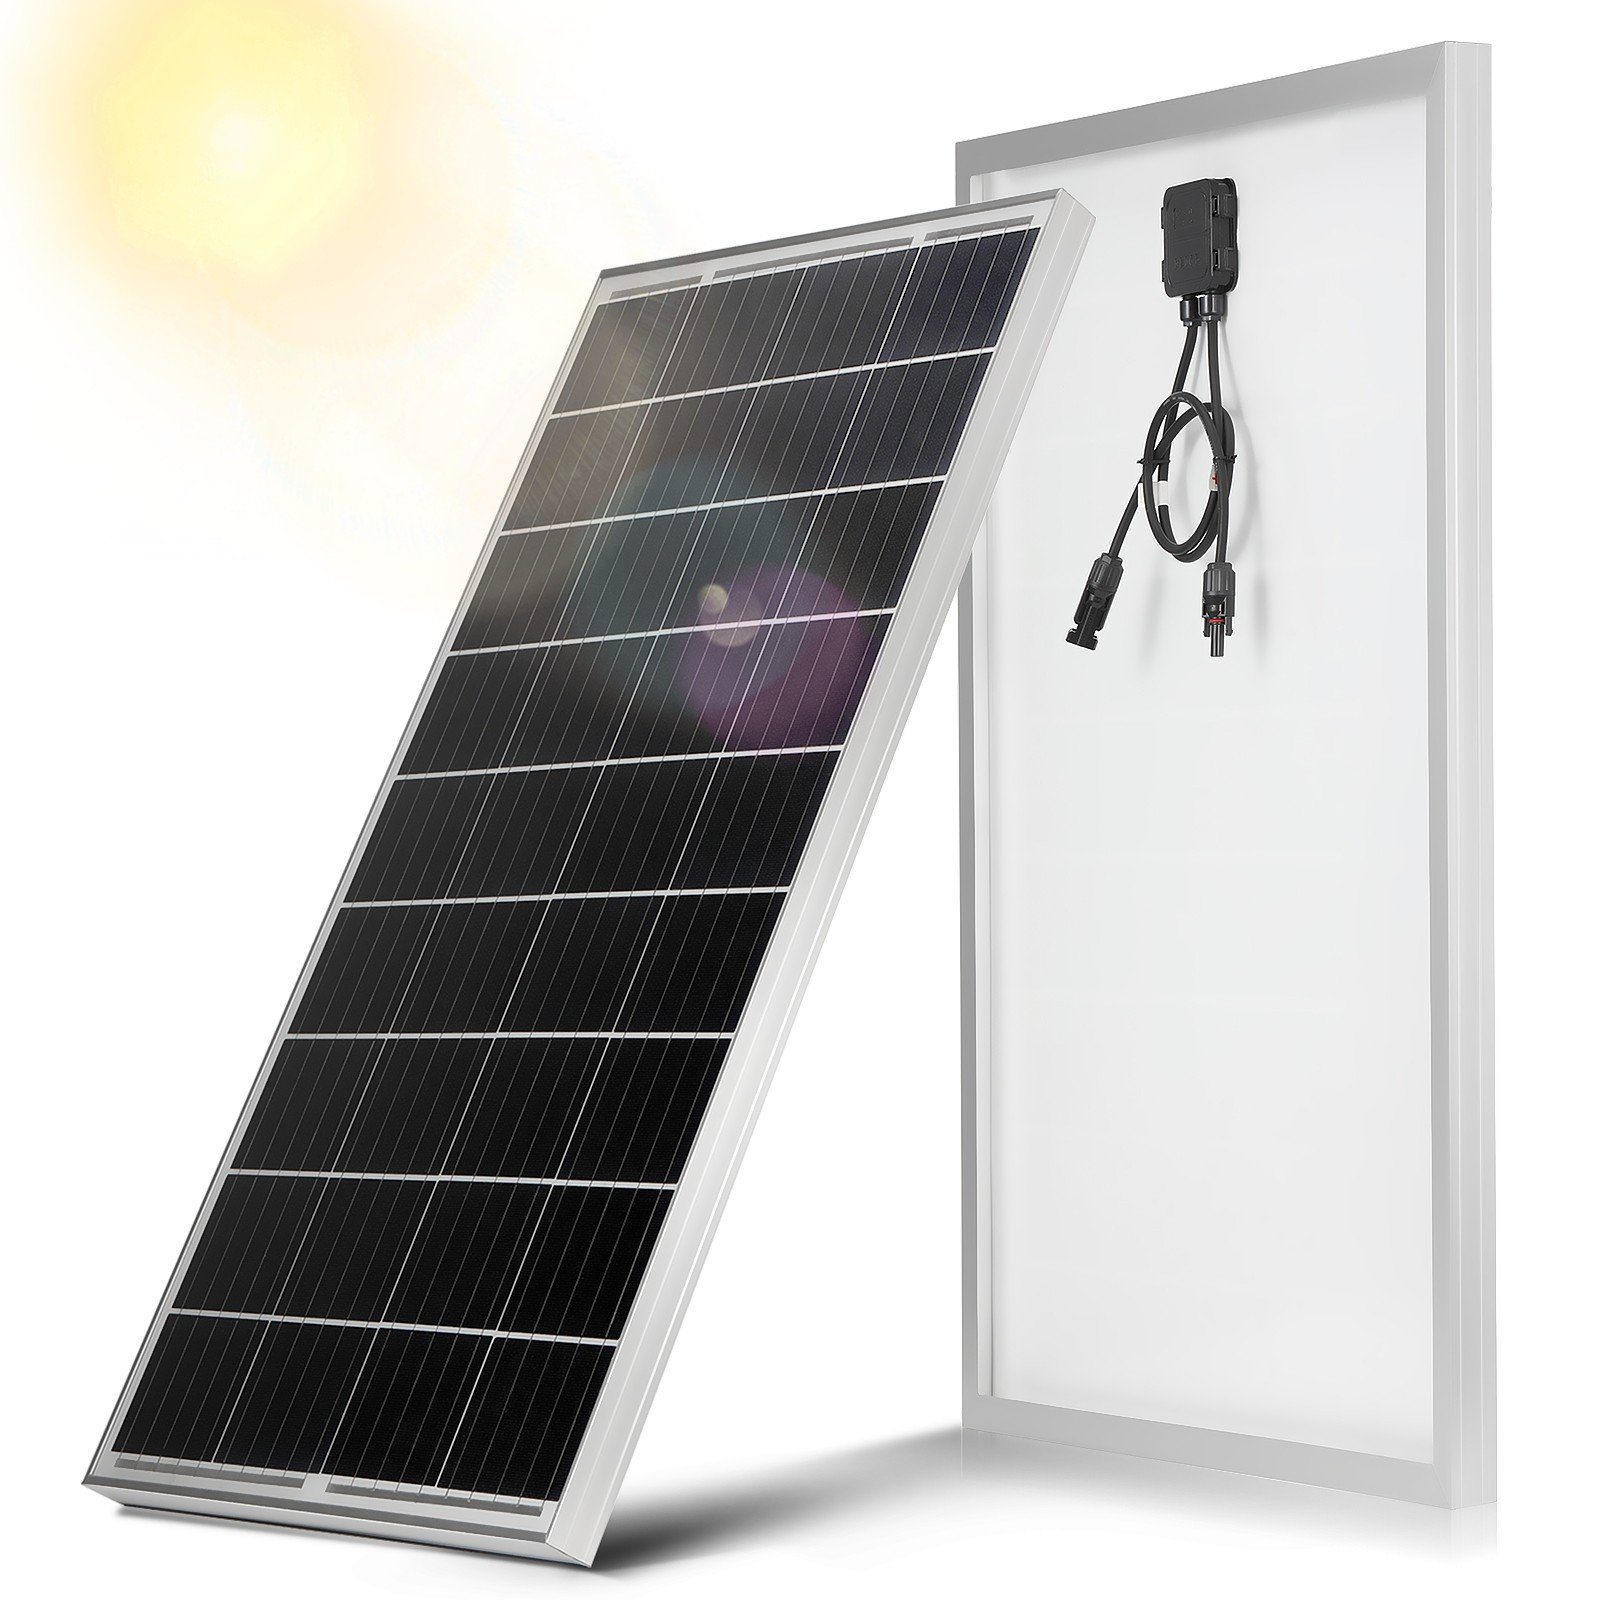 LETGOSPT Solarmodul 100W / 150W 18V Solarmodul Monokristallin Solarpanel Photovoltaik, IP67 Wasserdichte, Ideal zum Aufladen von Batterien Wohnmobil Garte 100W-1